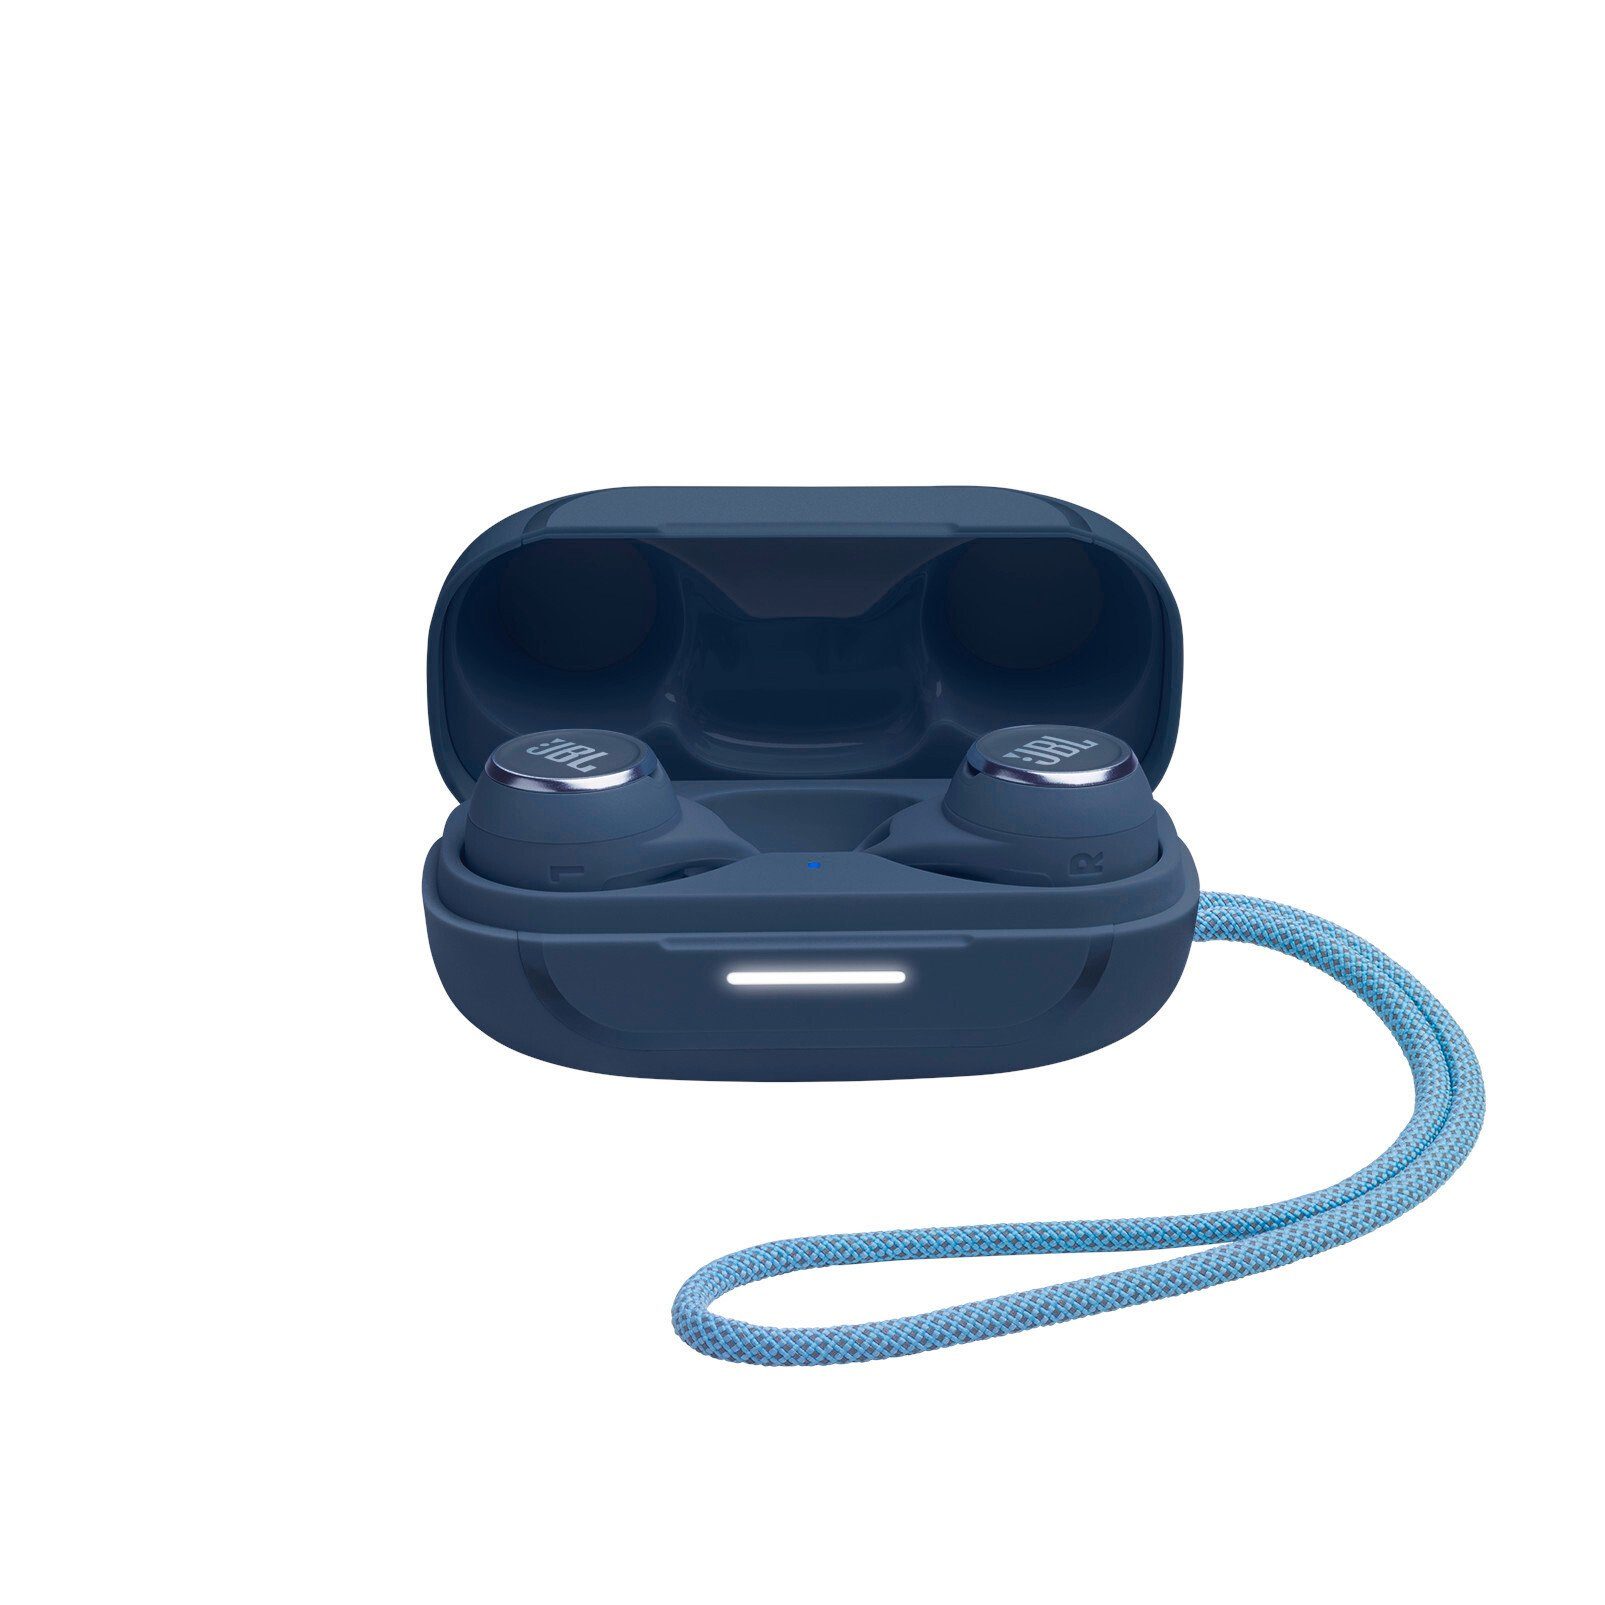 JBL Reflect In-Ear-Kopfhörer Blau wireless Aero